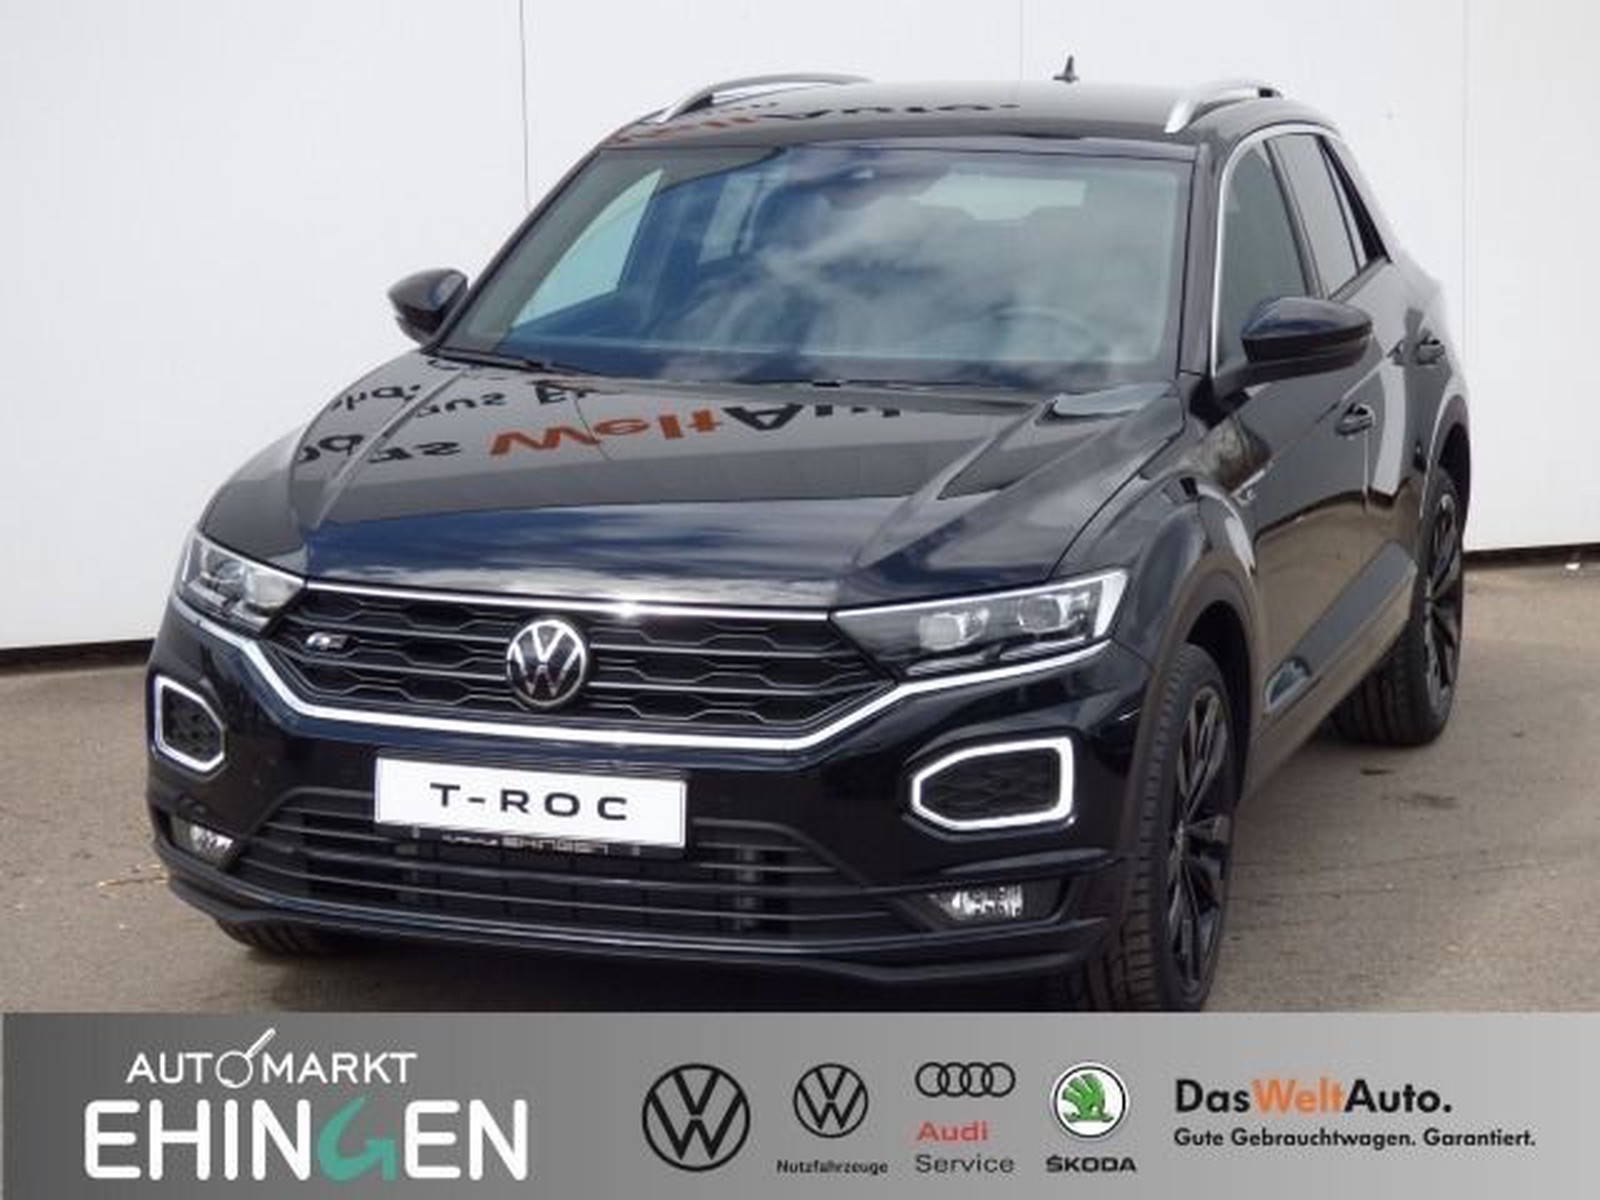 Volkswagen T-Roc Sport R Line 1.5 TSI DSG DSG Navi ACC Kamera  Vorführfahrzeug kaufen in Ehingen Preis 31888 eur - Int.Nr.: 04071 VERKAUFT